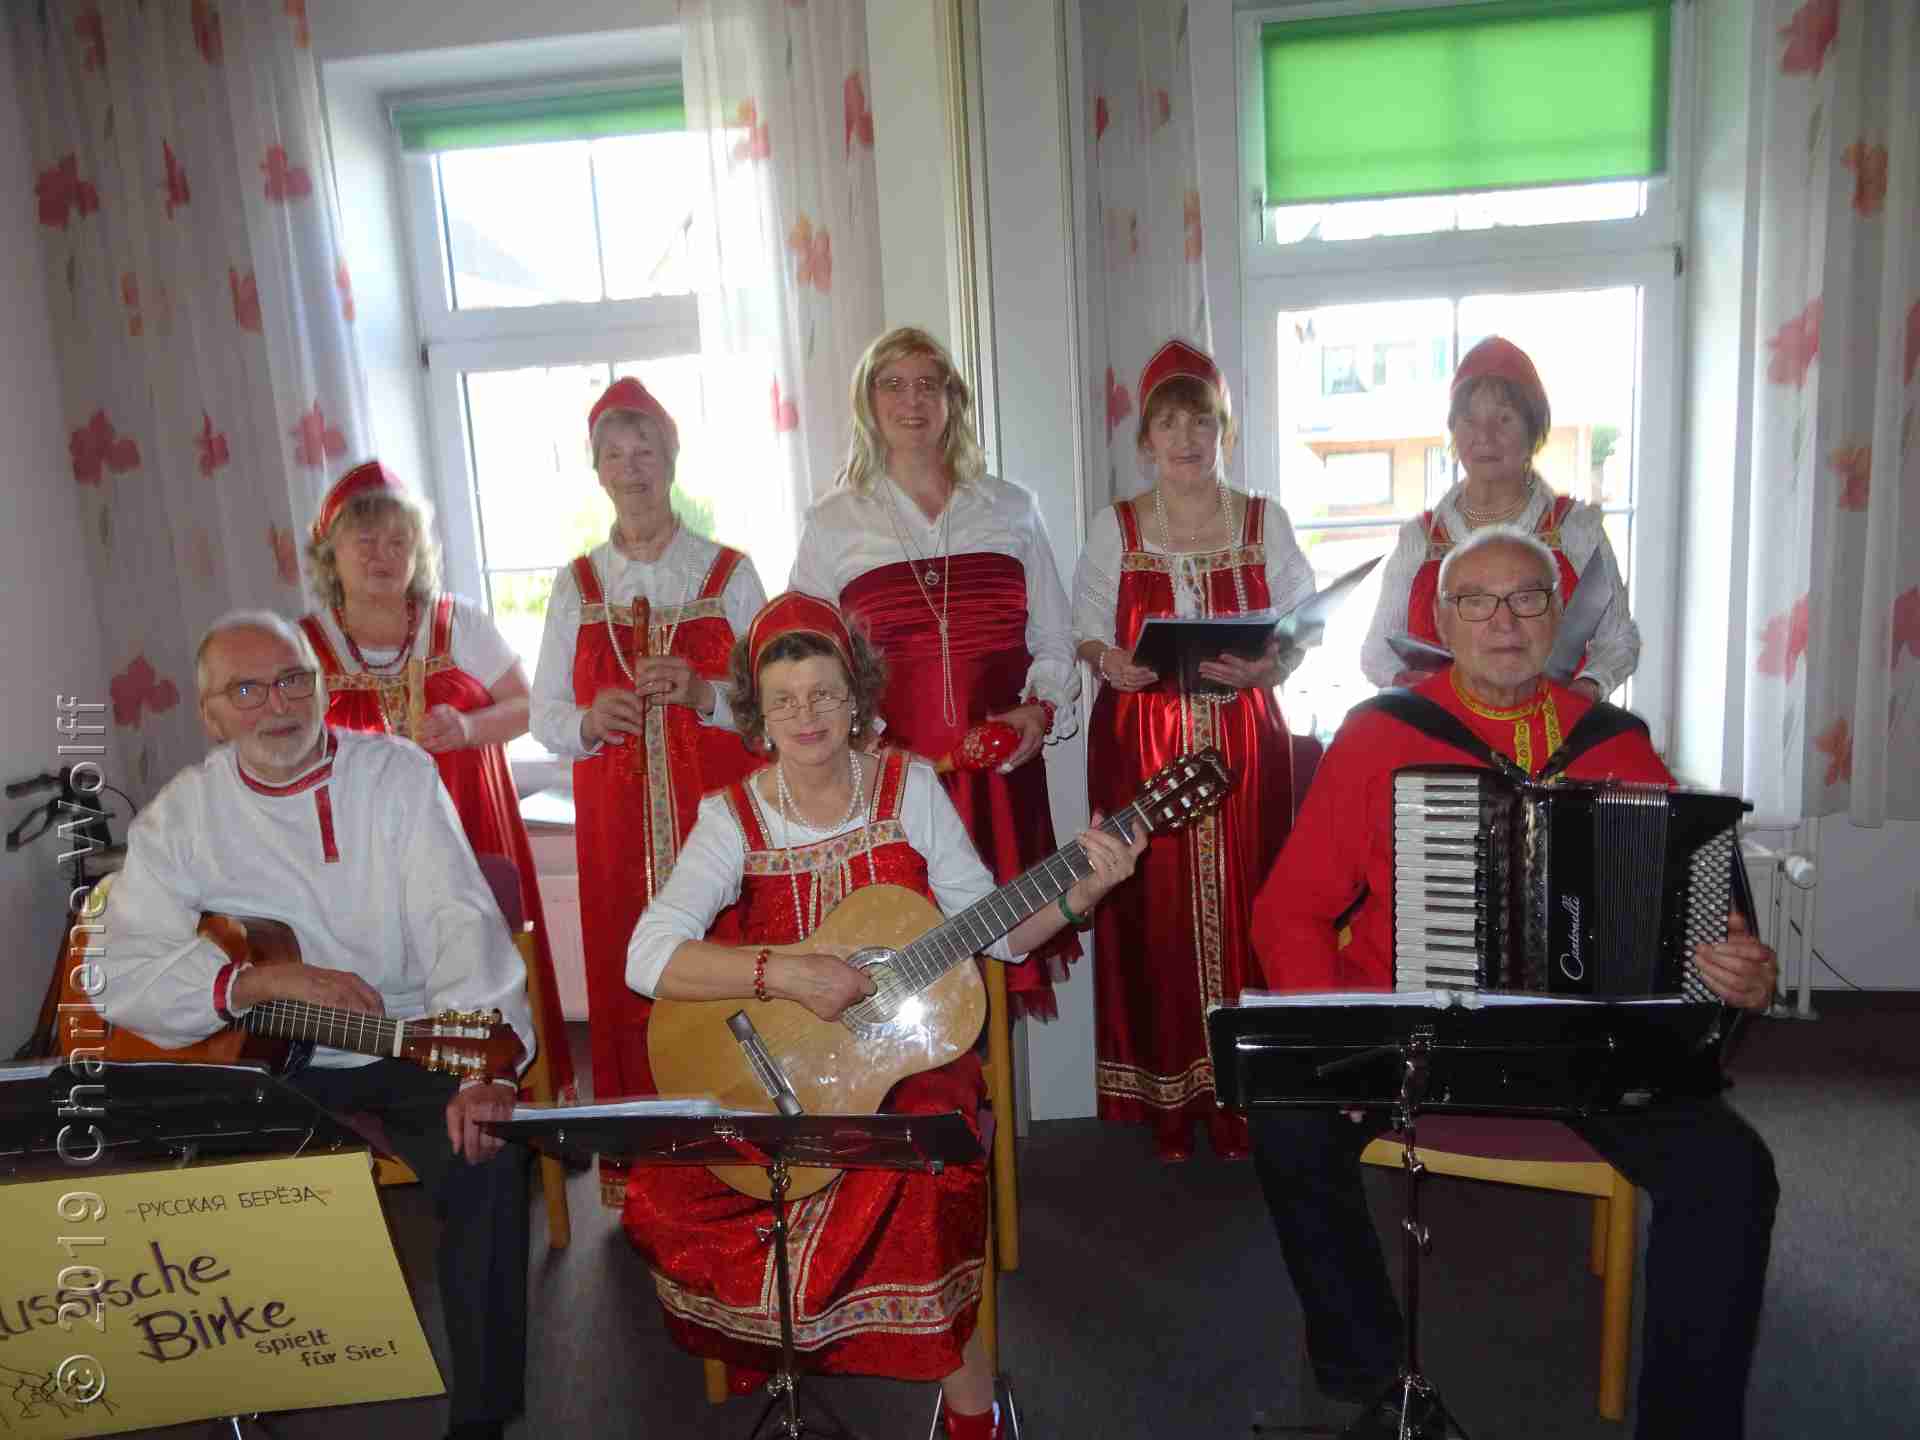 Folklorechor "Russische Birke"